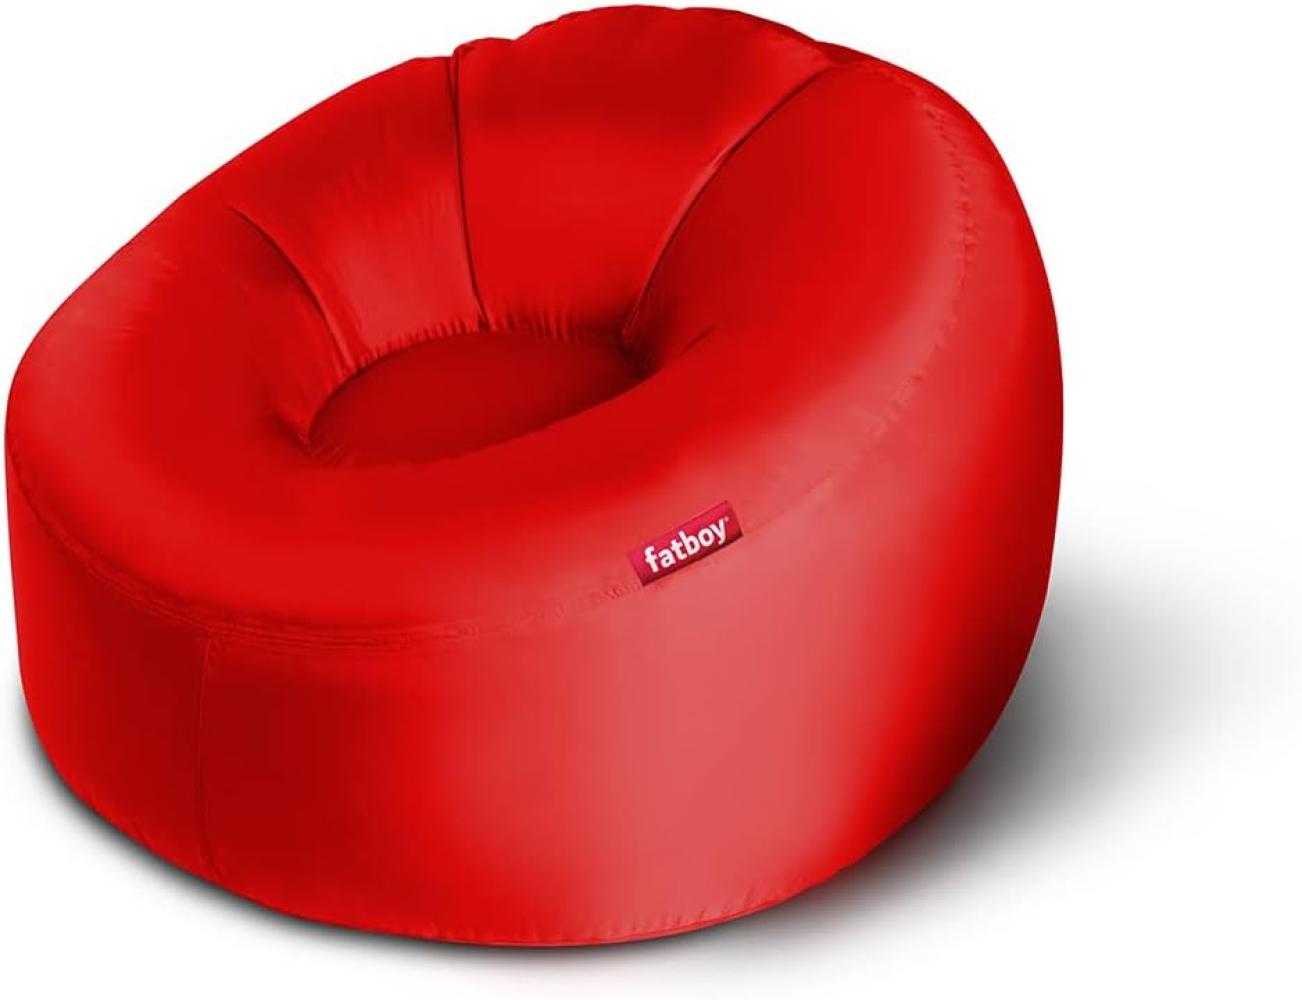 Fatboy® Lamzac 3. 0 Luftsofa | Großes, aufblasbares Sofa/Liege/Bett in Rot, Sitzsack mit Luft gefüllt | Outdoor geeignet | 110 x 103 x 62 cm Bild 1